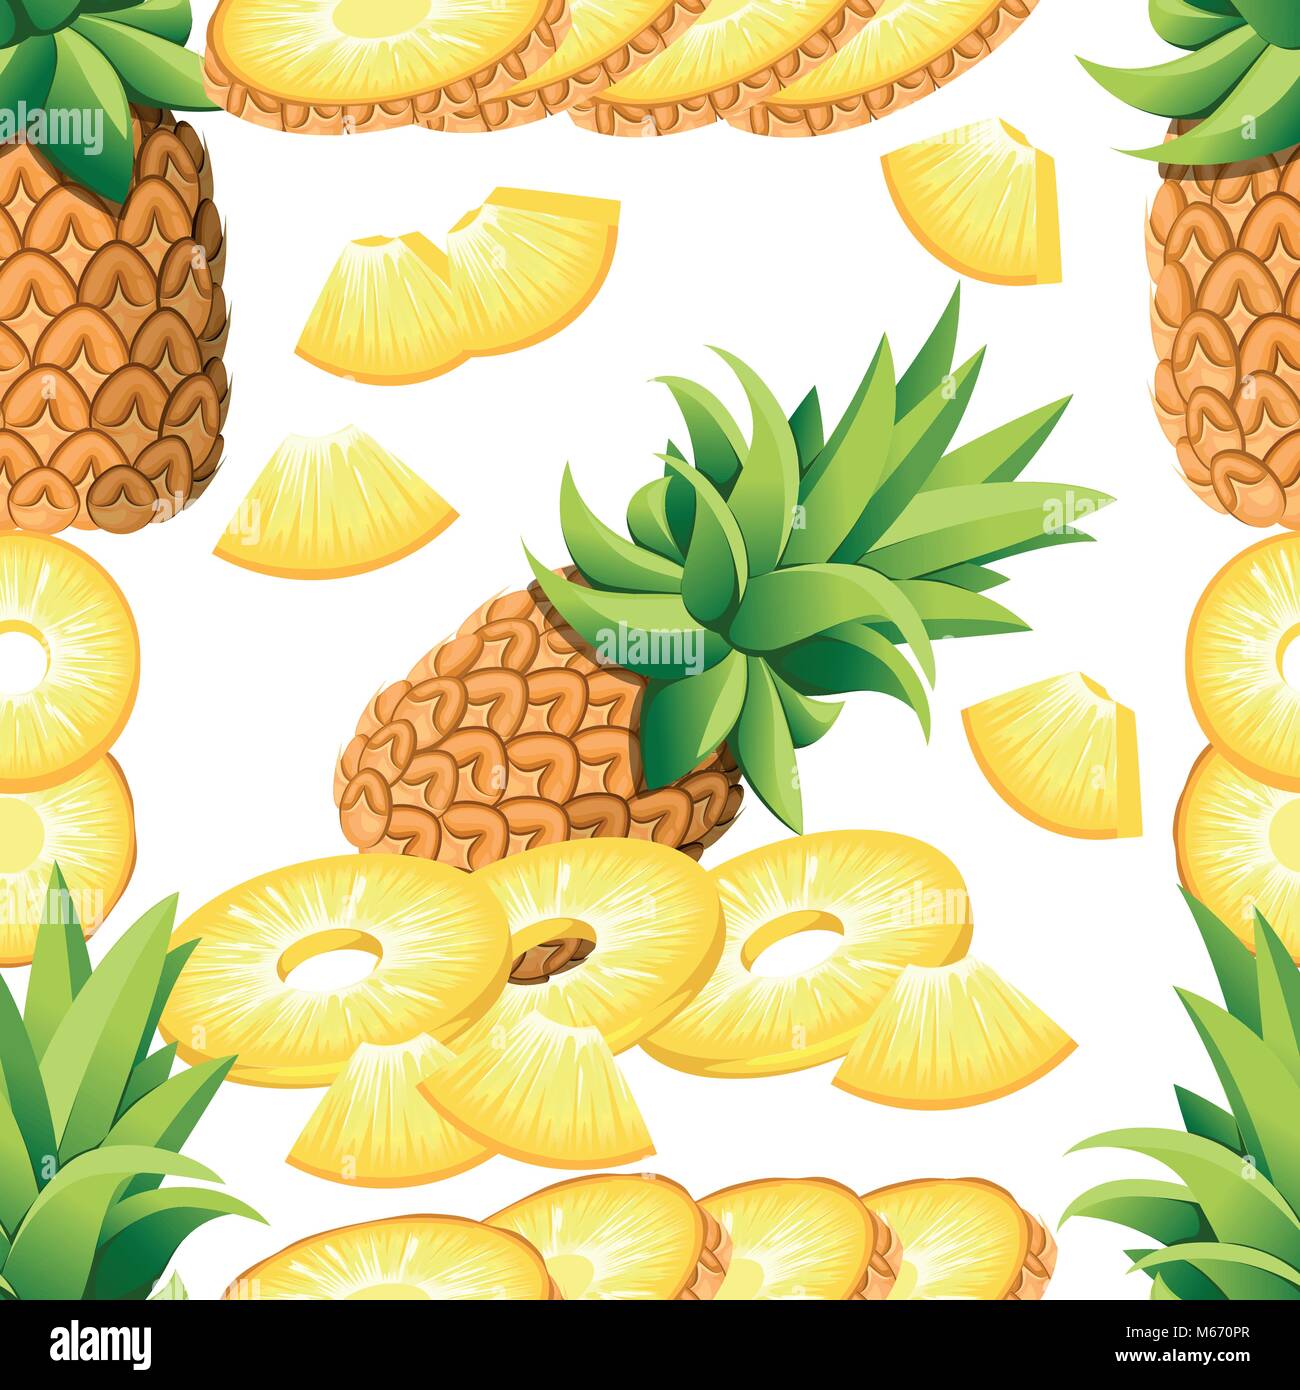 Modello di ananas di banana e le fette di ananas. Illustrazione Vettoriale per poster decorativi, emblema di prodotto naturale, il mercato degli agricoltori. La pagina del sito web e mobile app design Illustrazione Vettoriale